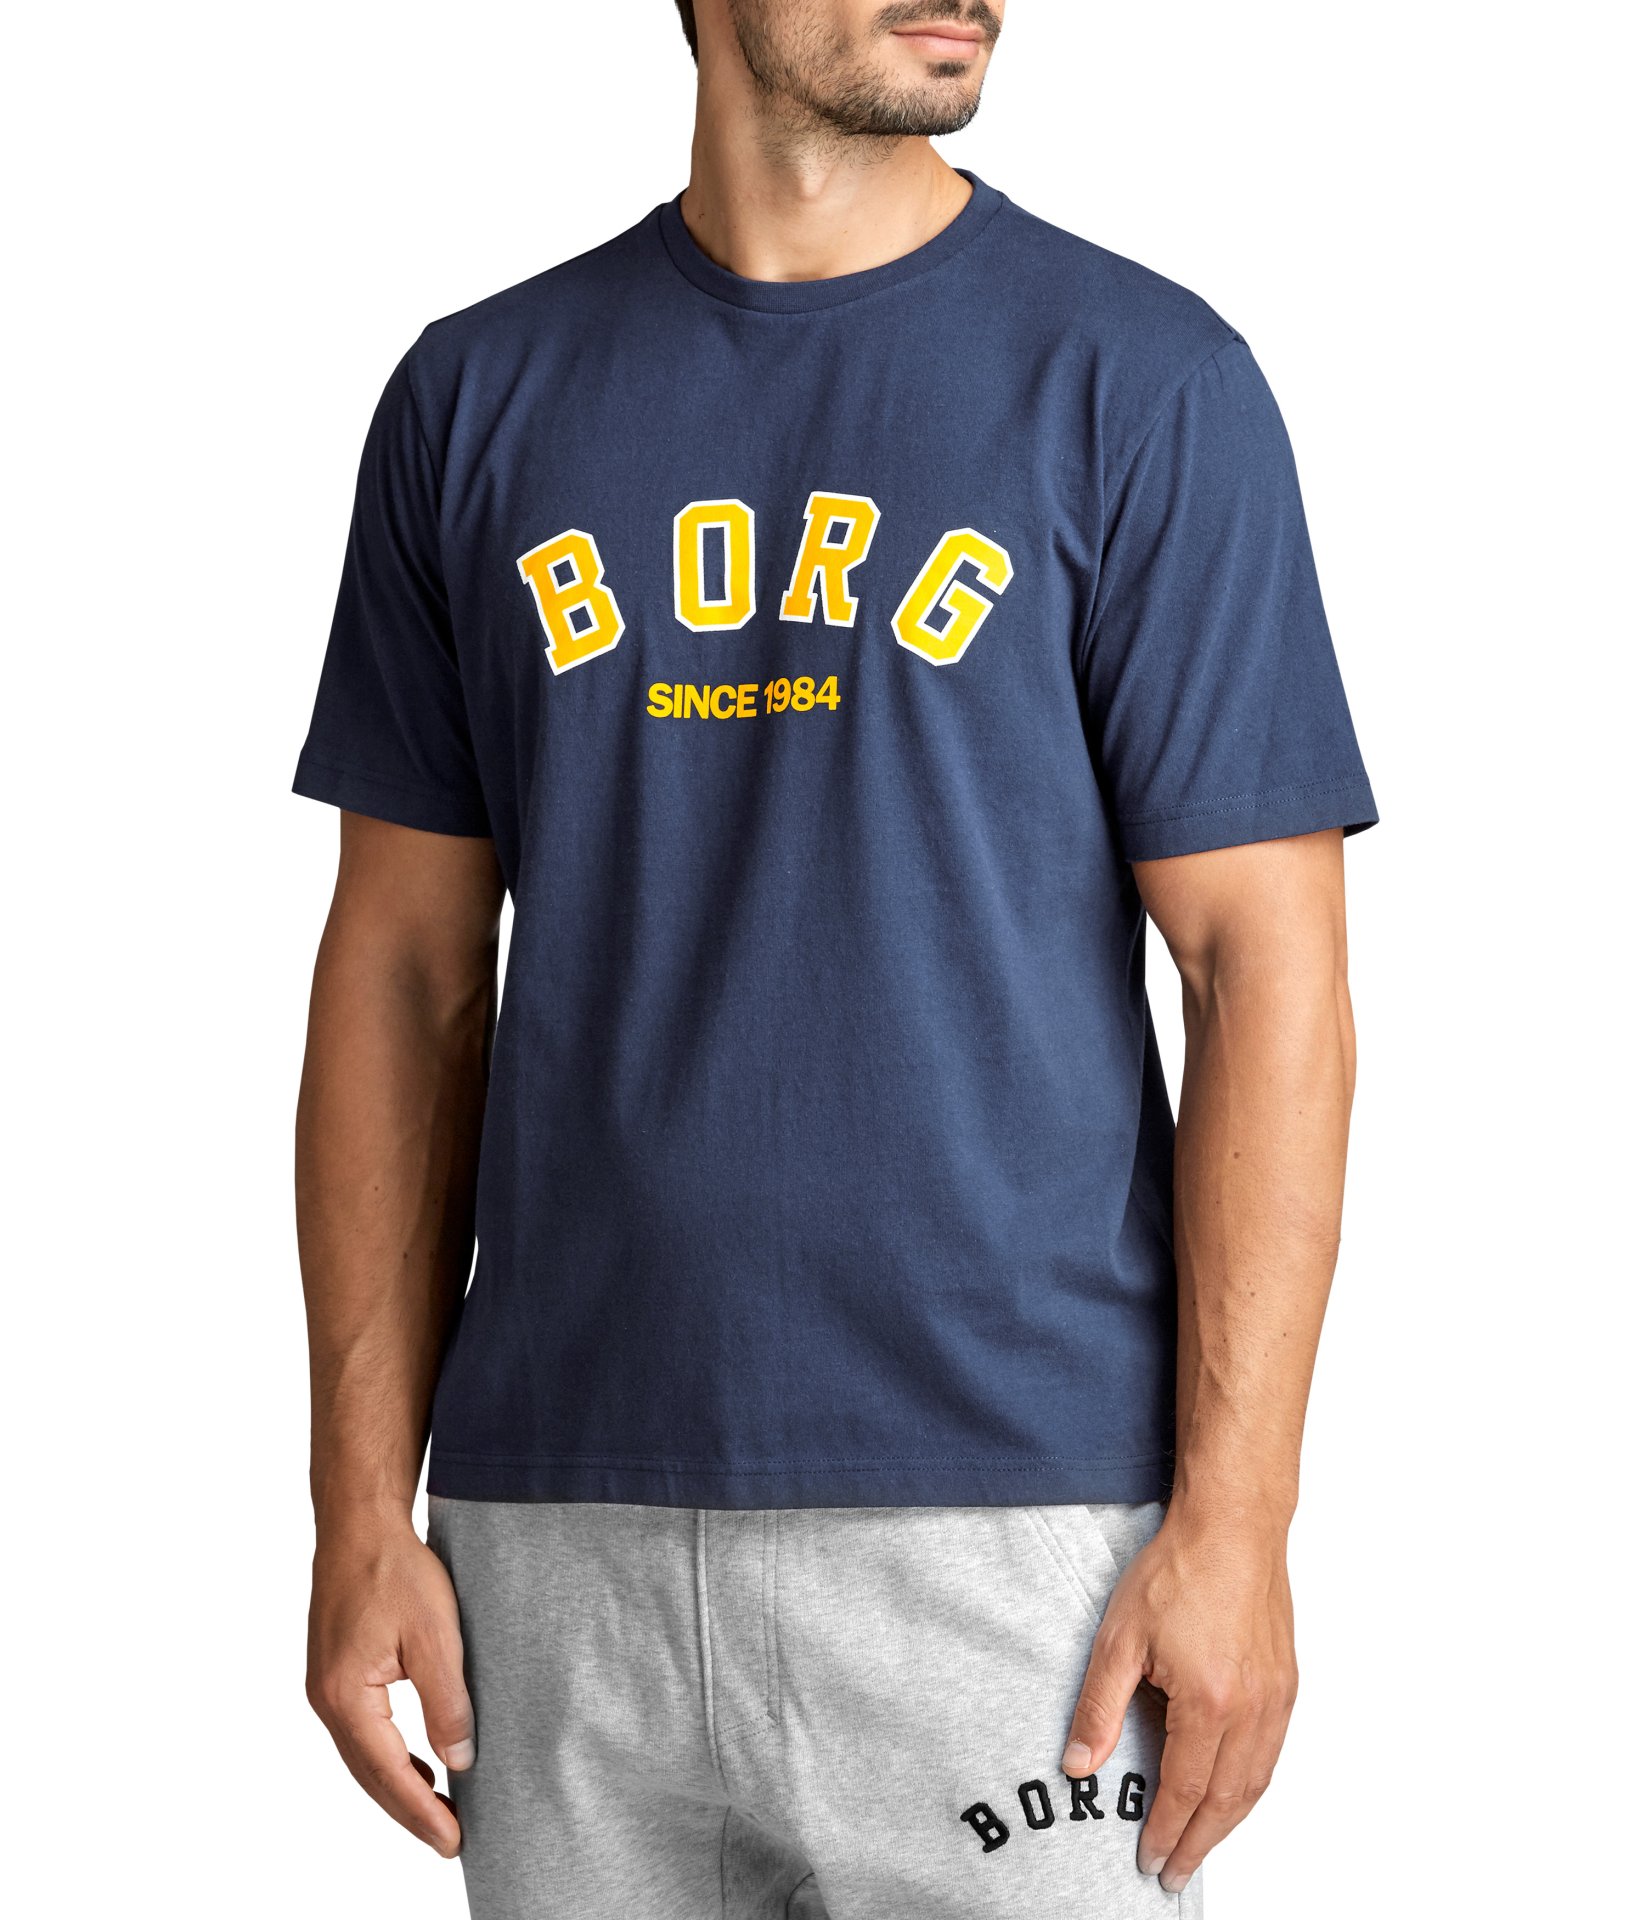 Ανδρικά/Ρούχα/Αθλητικά/T-shirt BJORN BORG - Ανδρικό t-shirt BJORN BORG μπλε